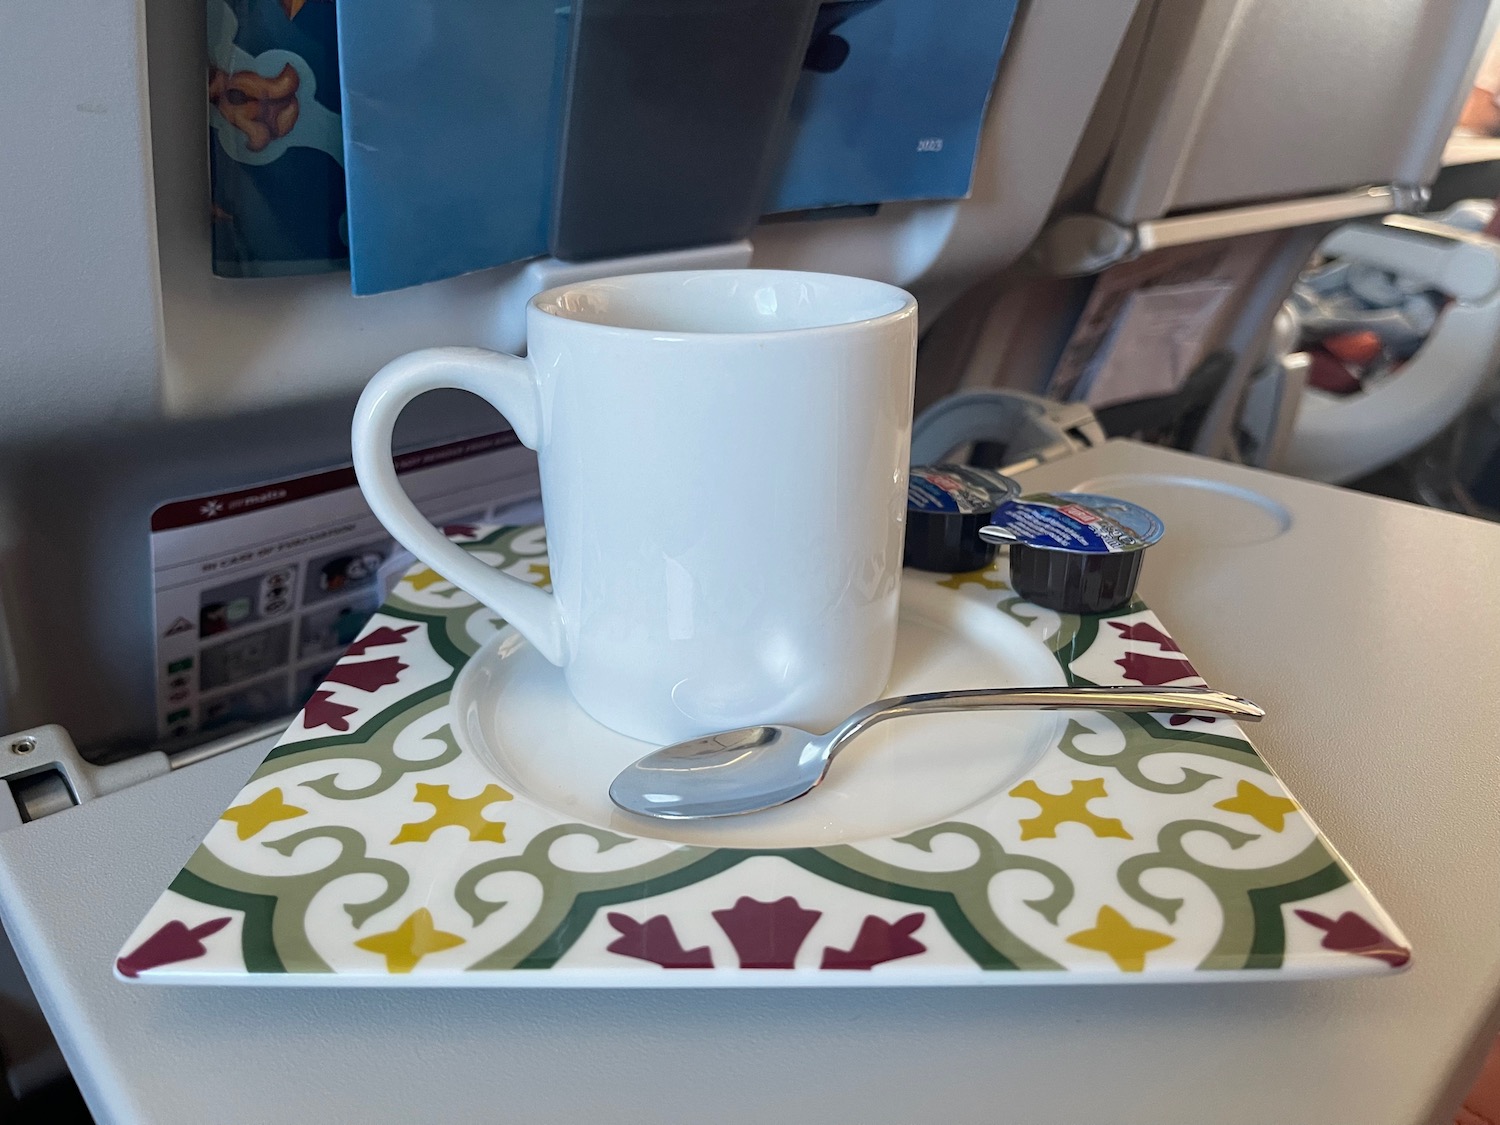 a white mug and spoon on a plate